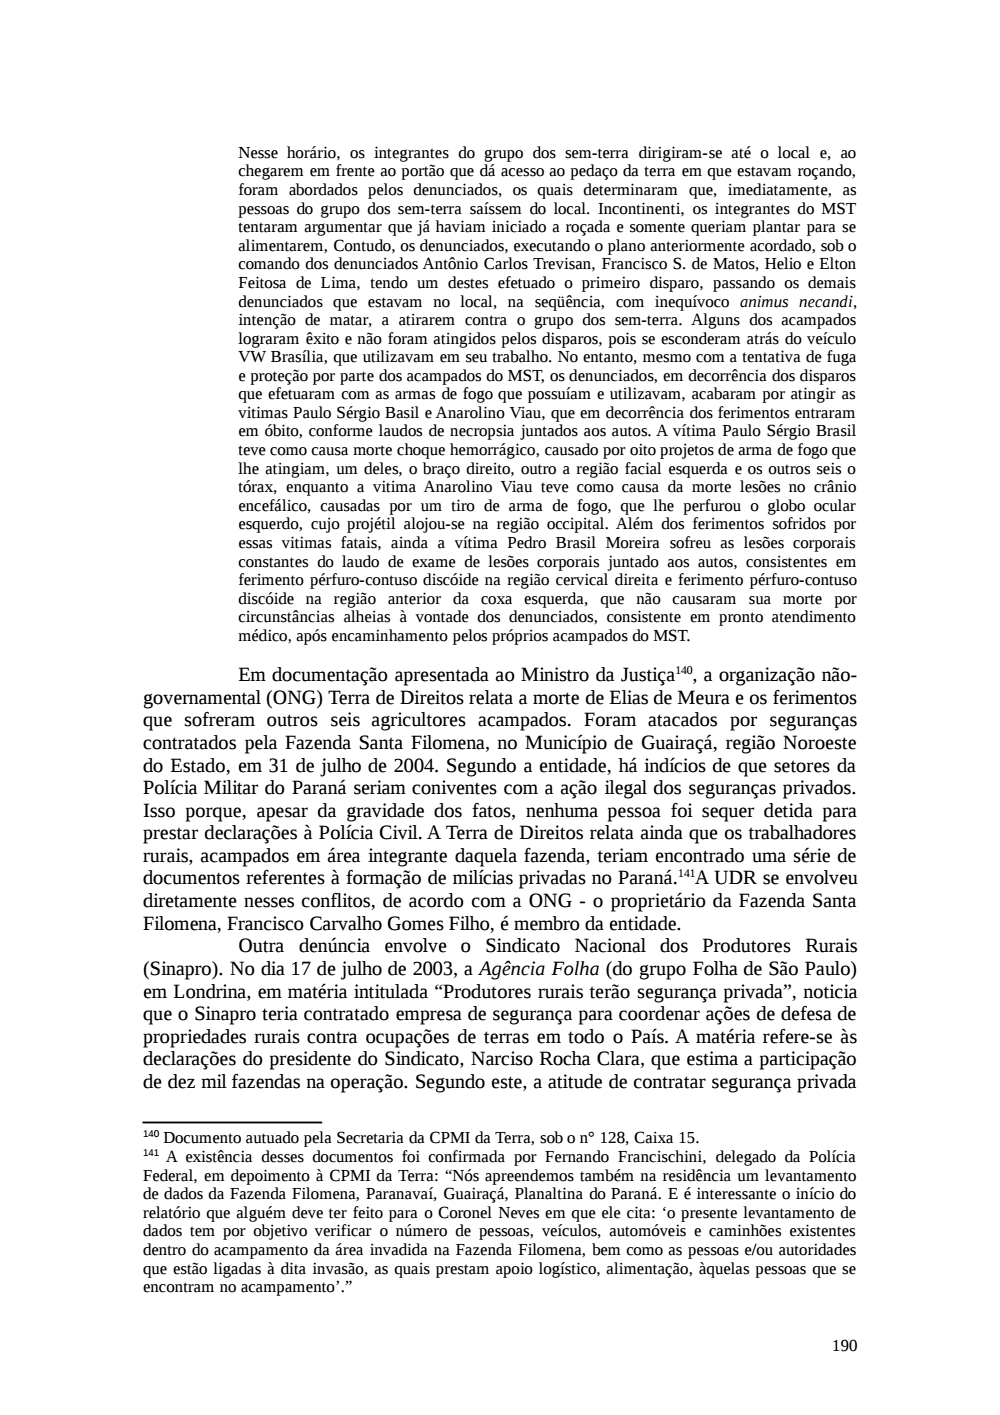 Page 190 from Relatório final da comissão